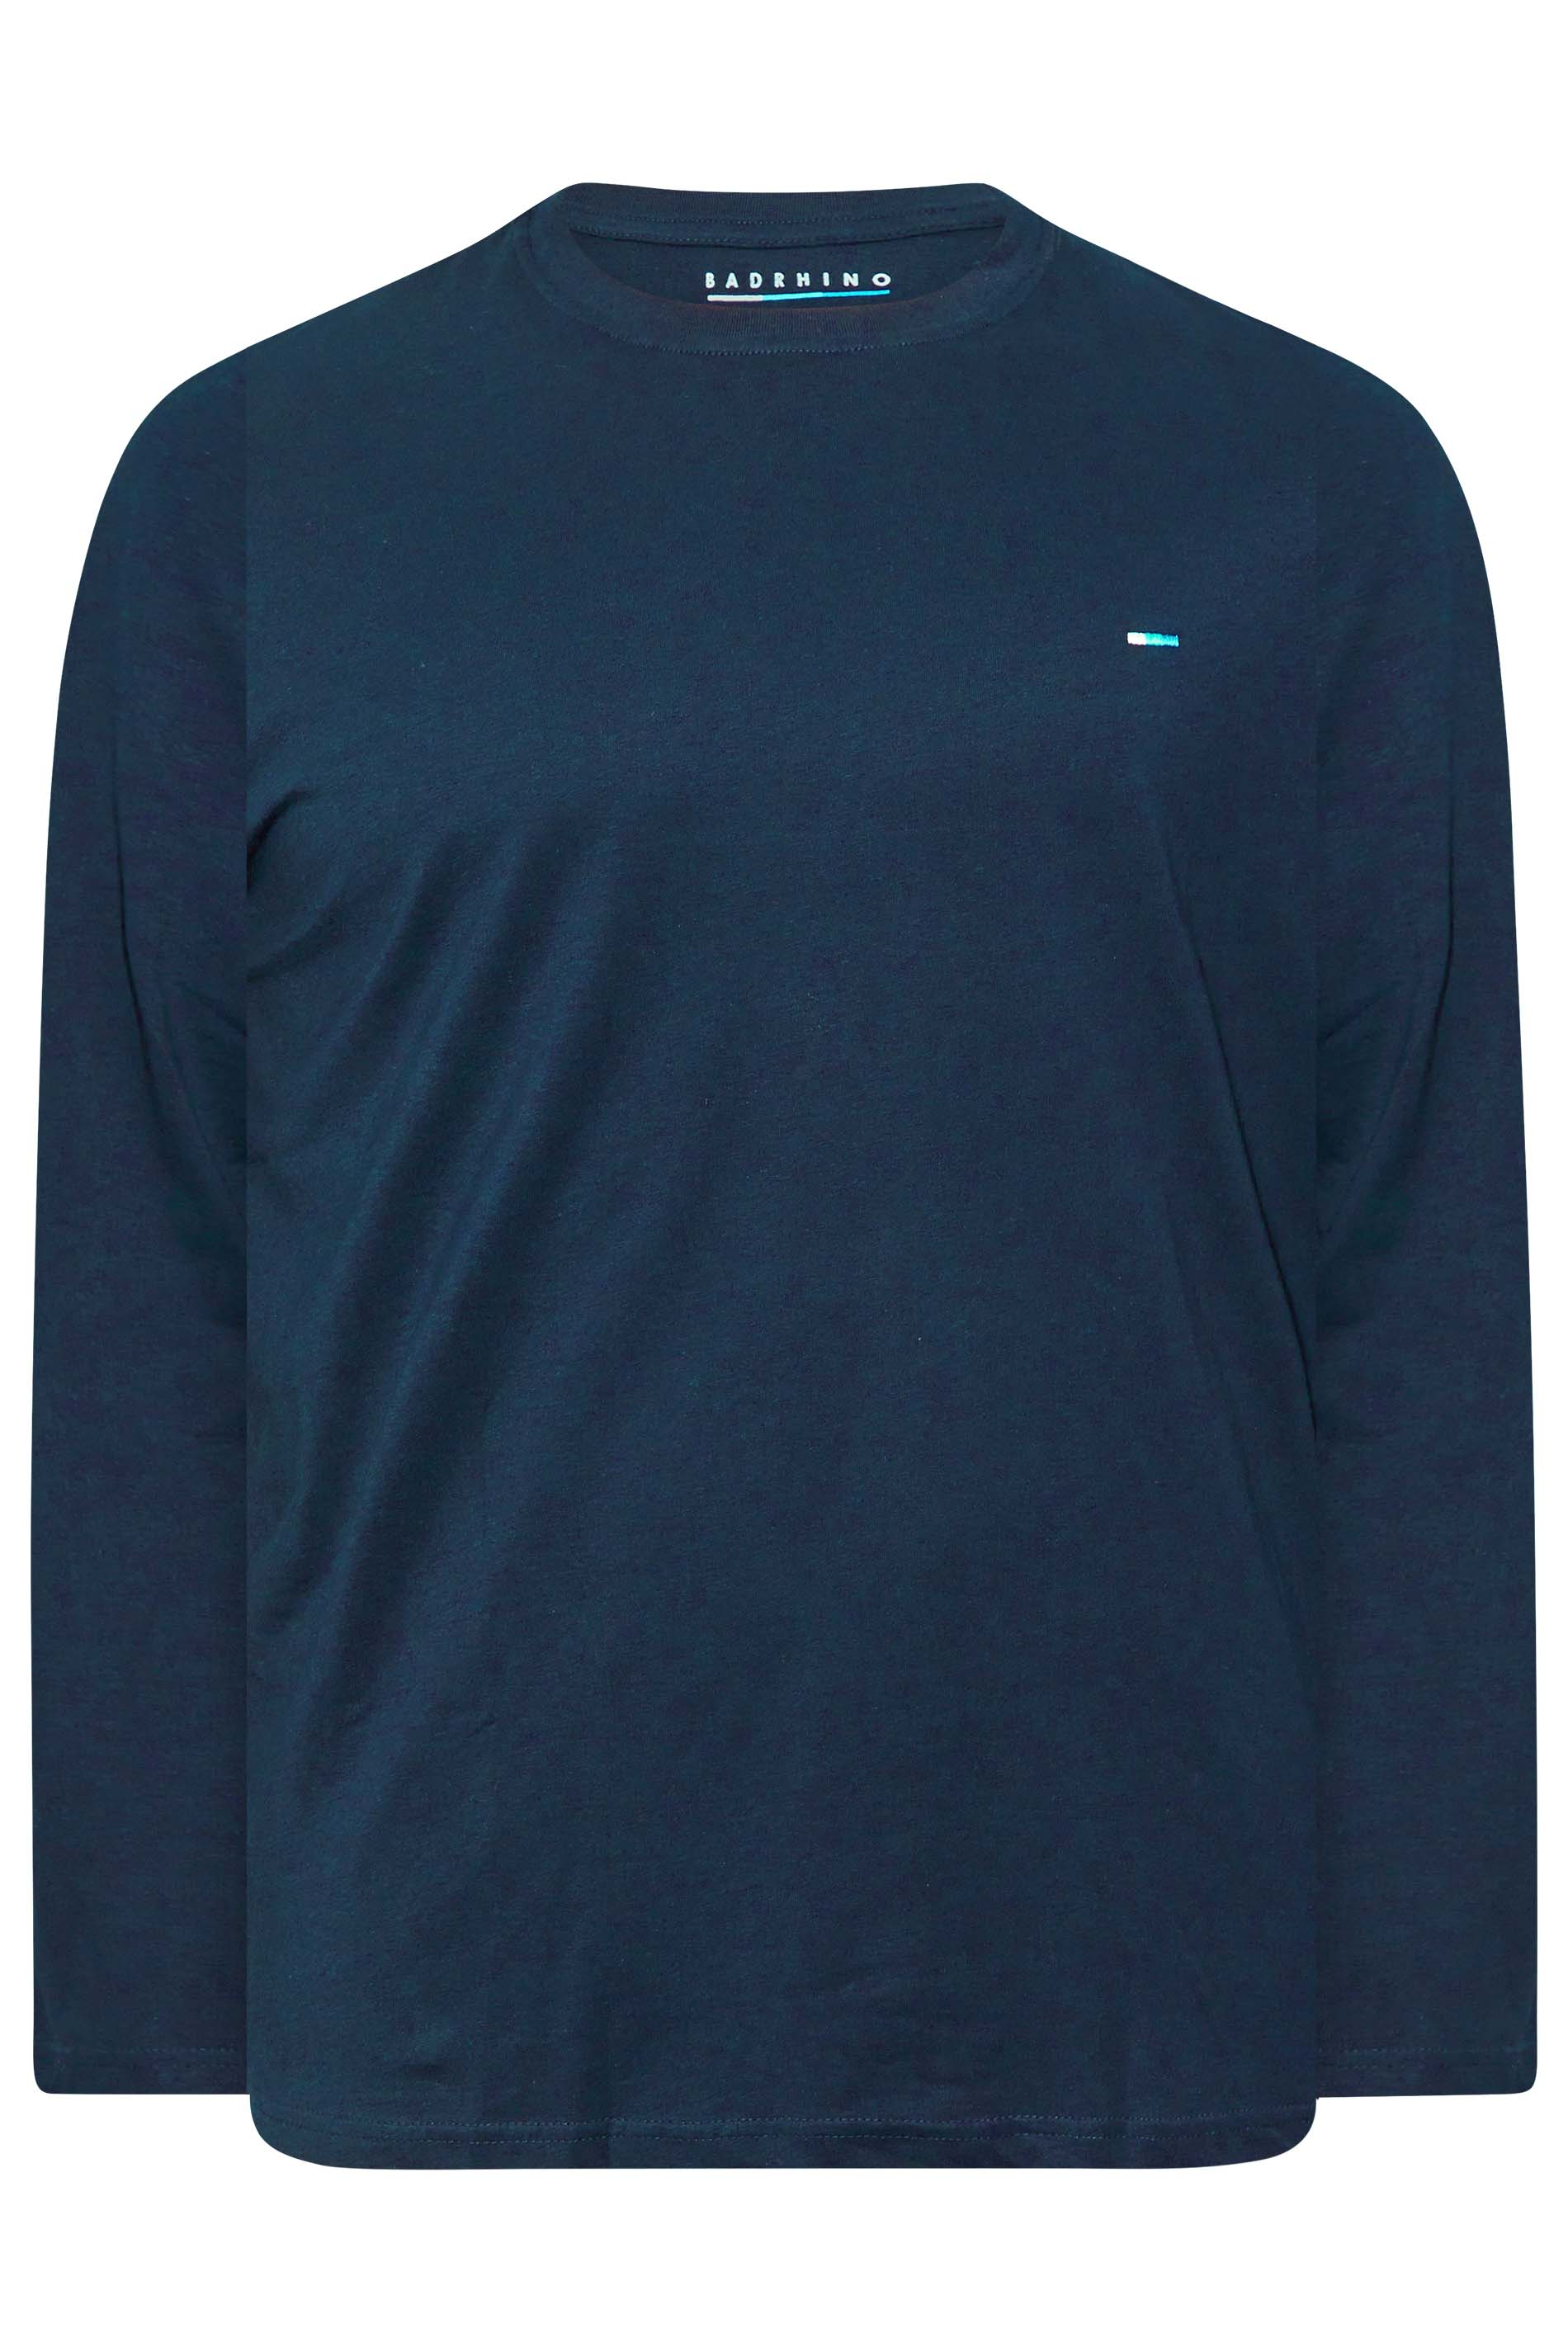 BadRhino Navy Blue Plain Long Sleeve T-Shirt | BadRhino 3